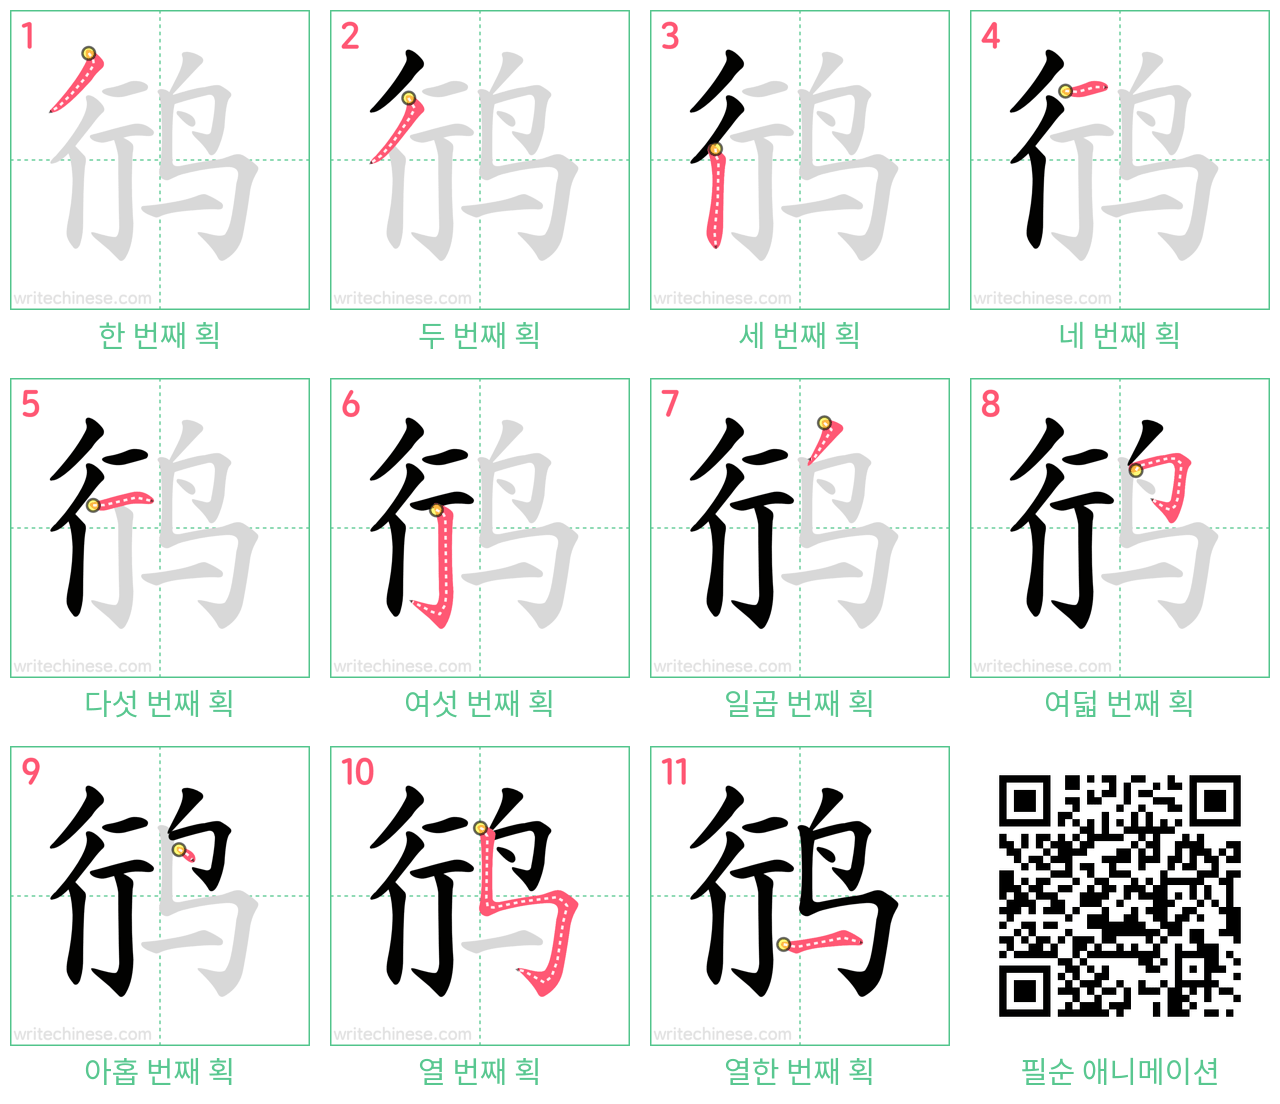 鸻 step-by-step stroke order diagrams